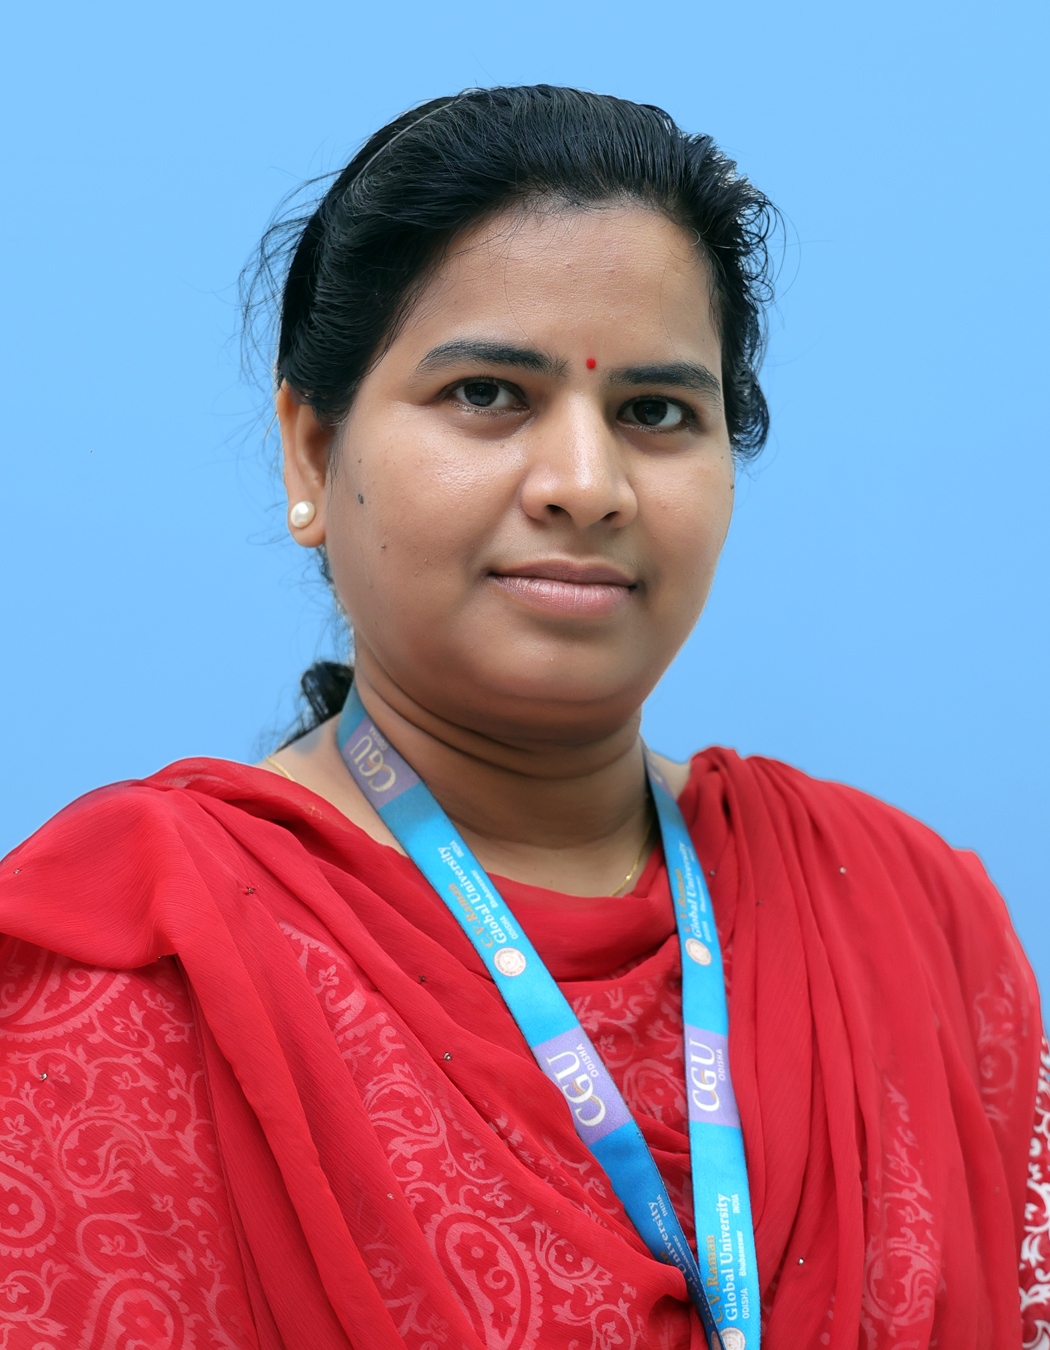 Dr. Jayashree Mohanty